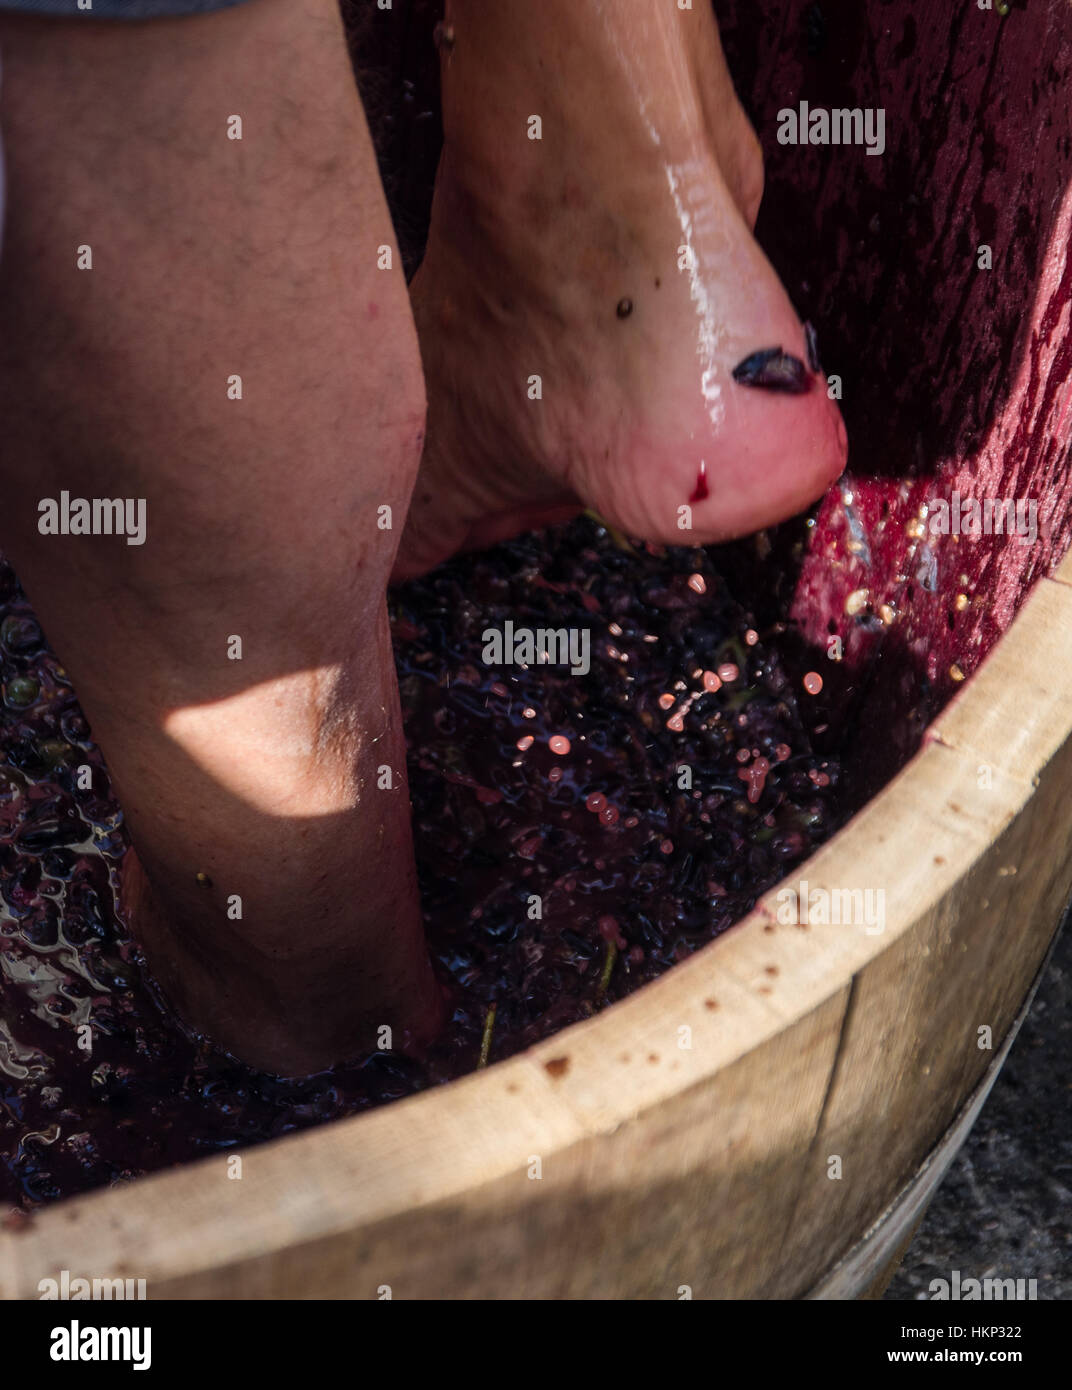 Trauben von roten Trauben bereit, mit den Füßen nach alten Traditionen und echte Weinproduktion gedrückt werden. Stockfoto